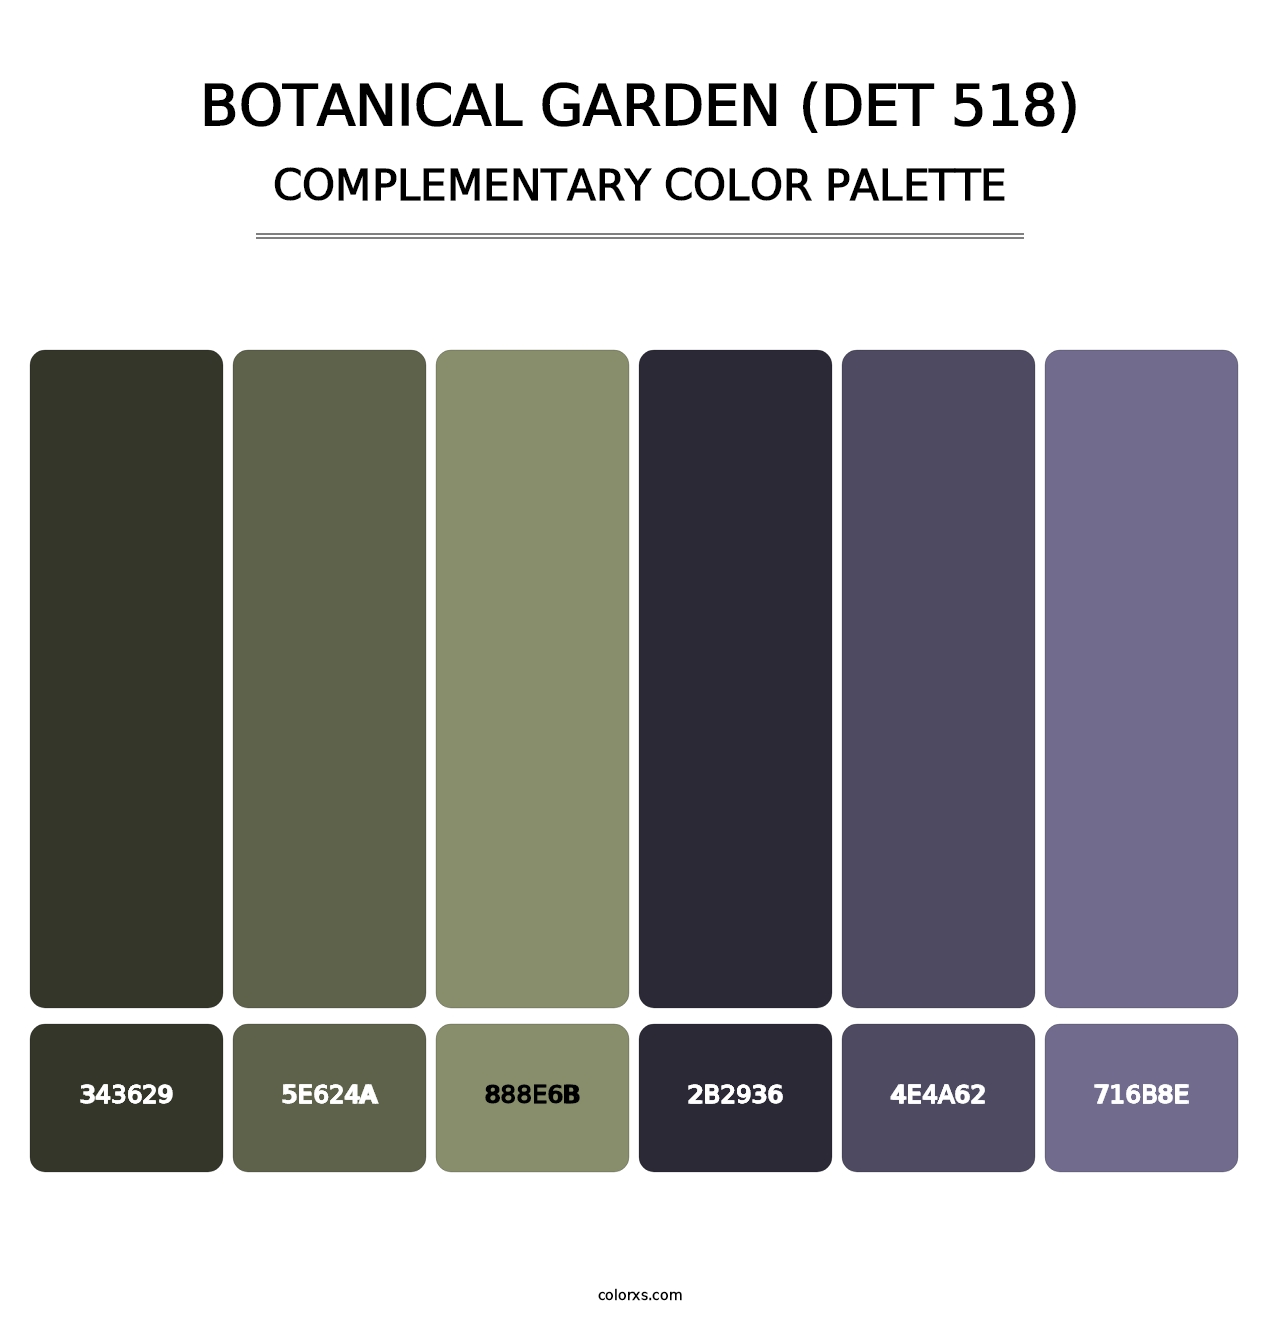 Botanical Garden (DET 518) - Complementary Color Palette